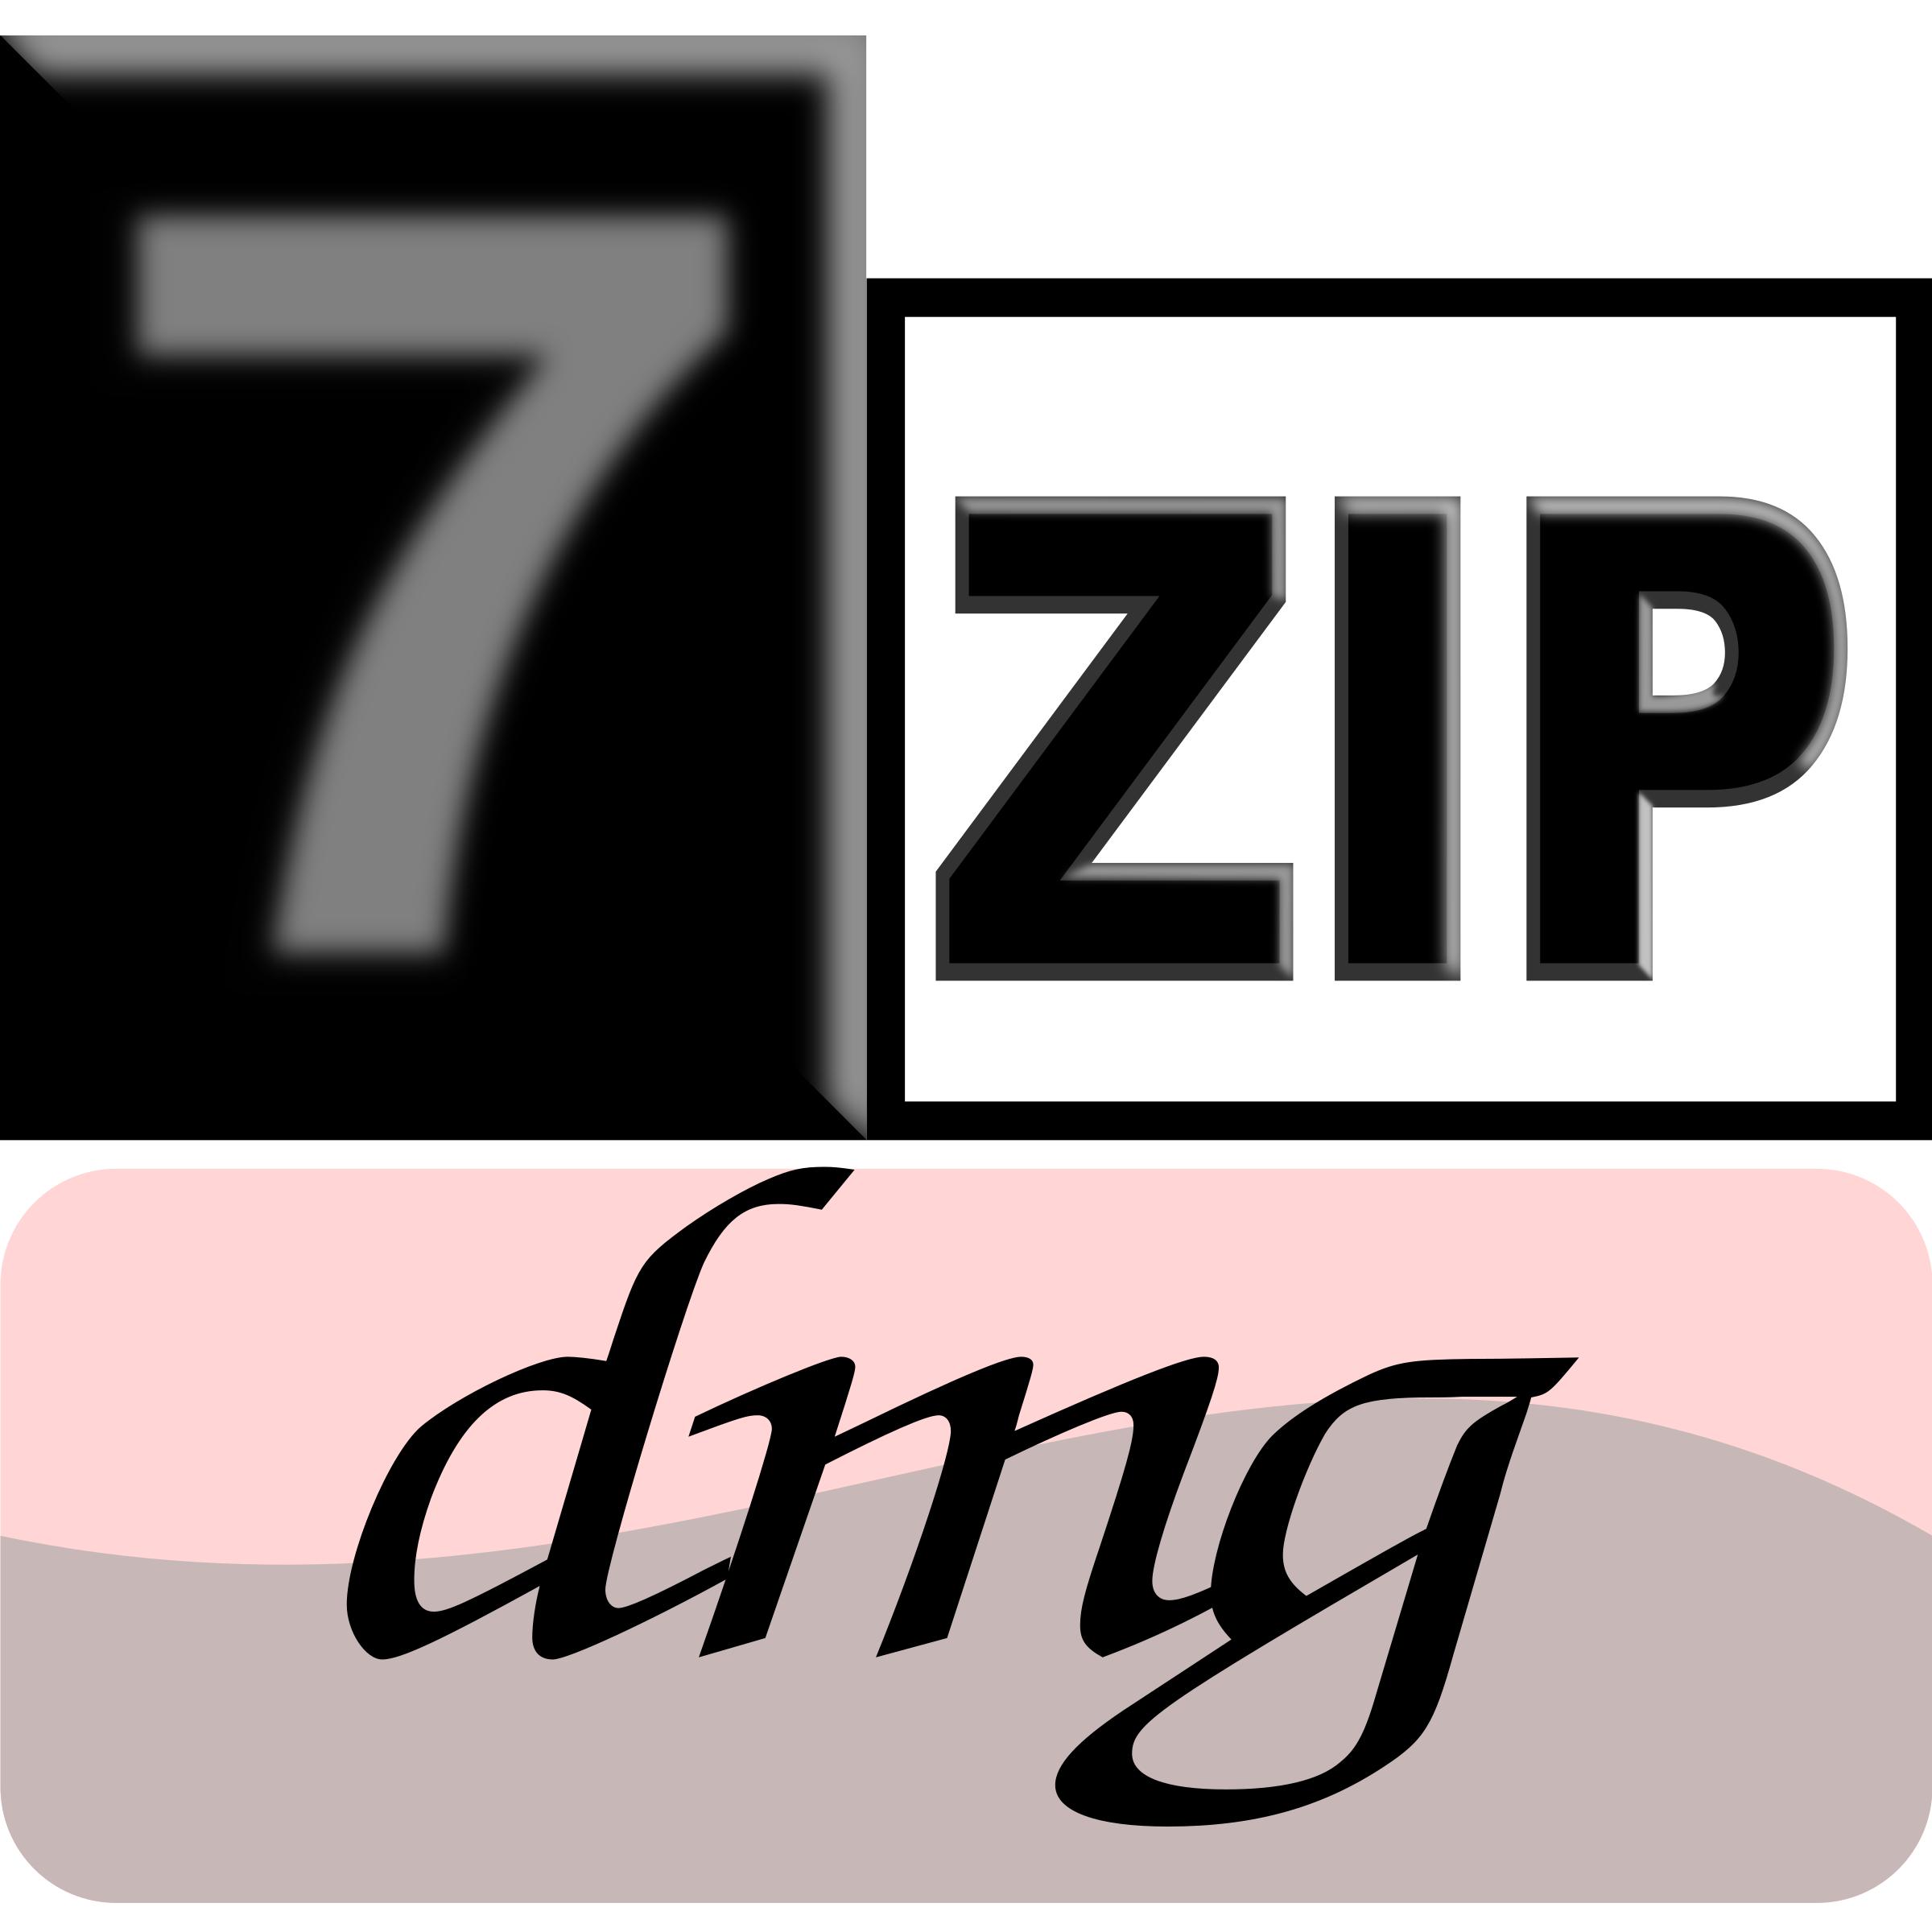 7zipClassic-dmg png